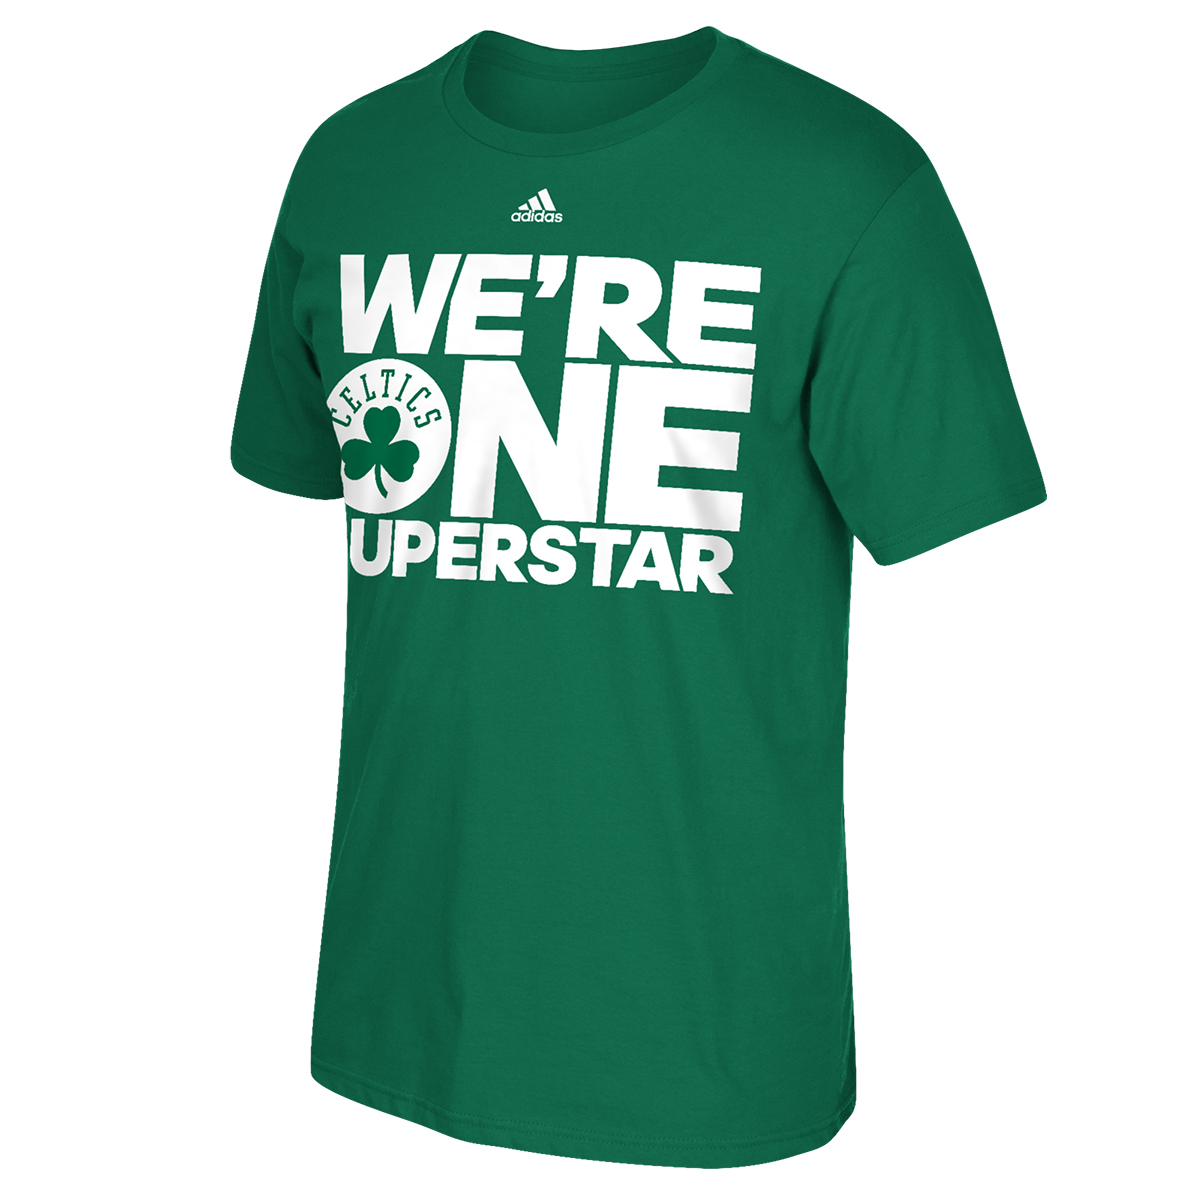 One Superstar Shirt